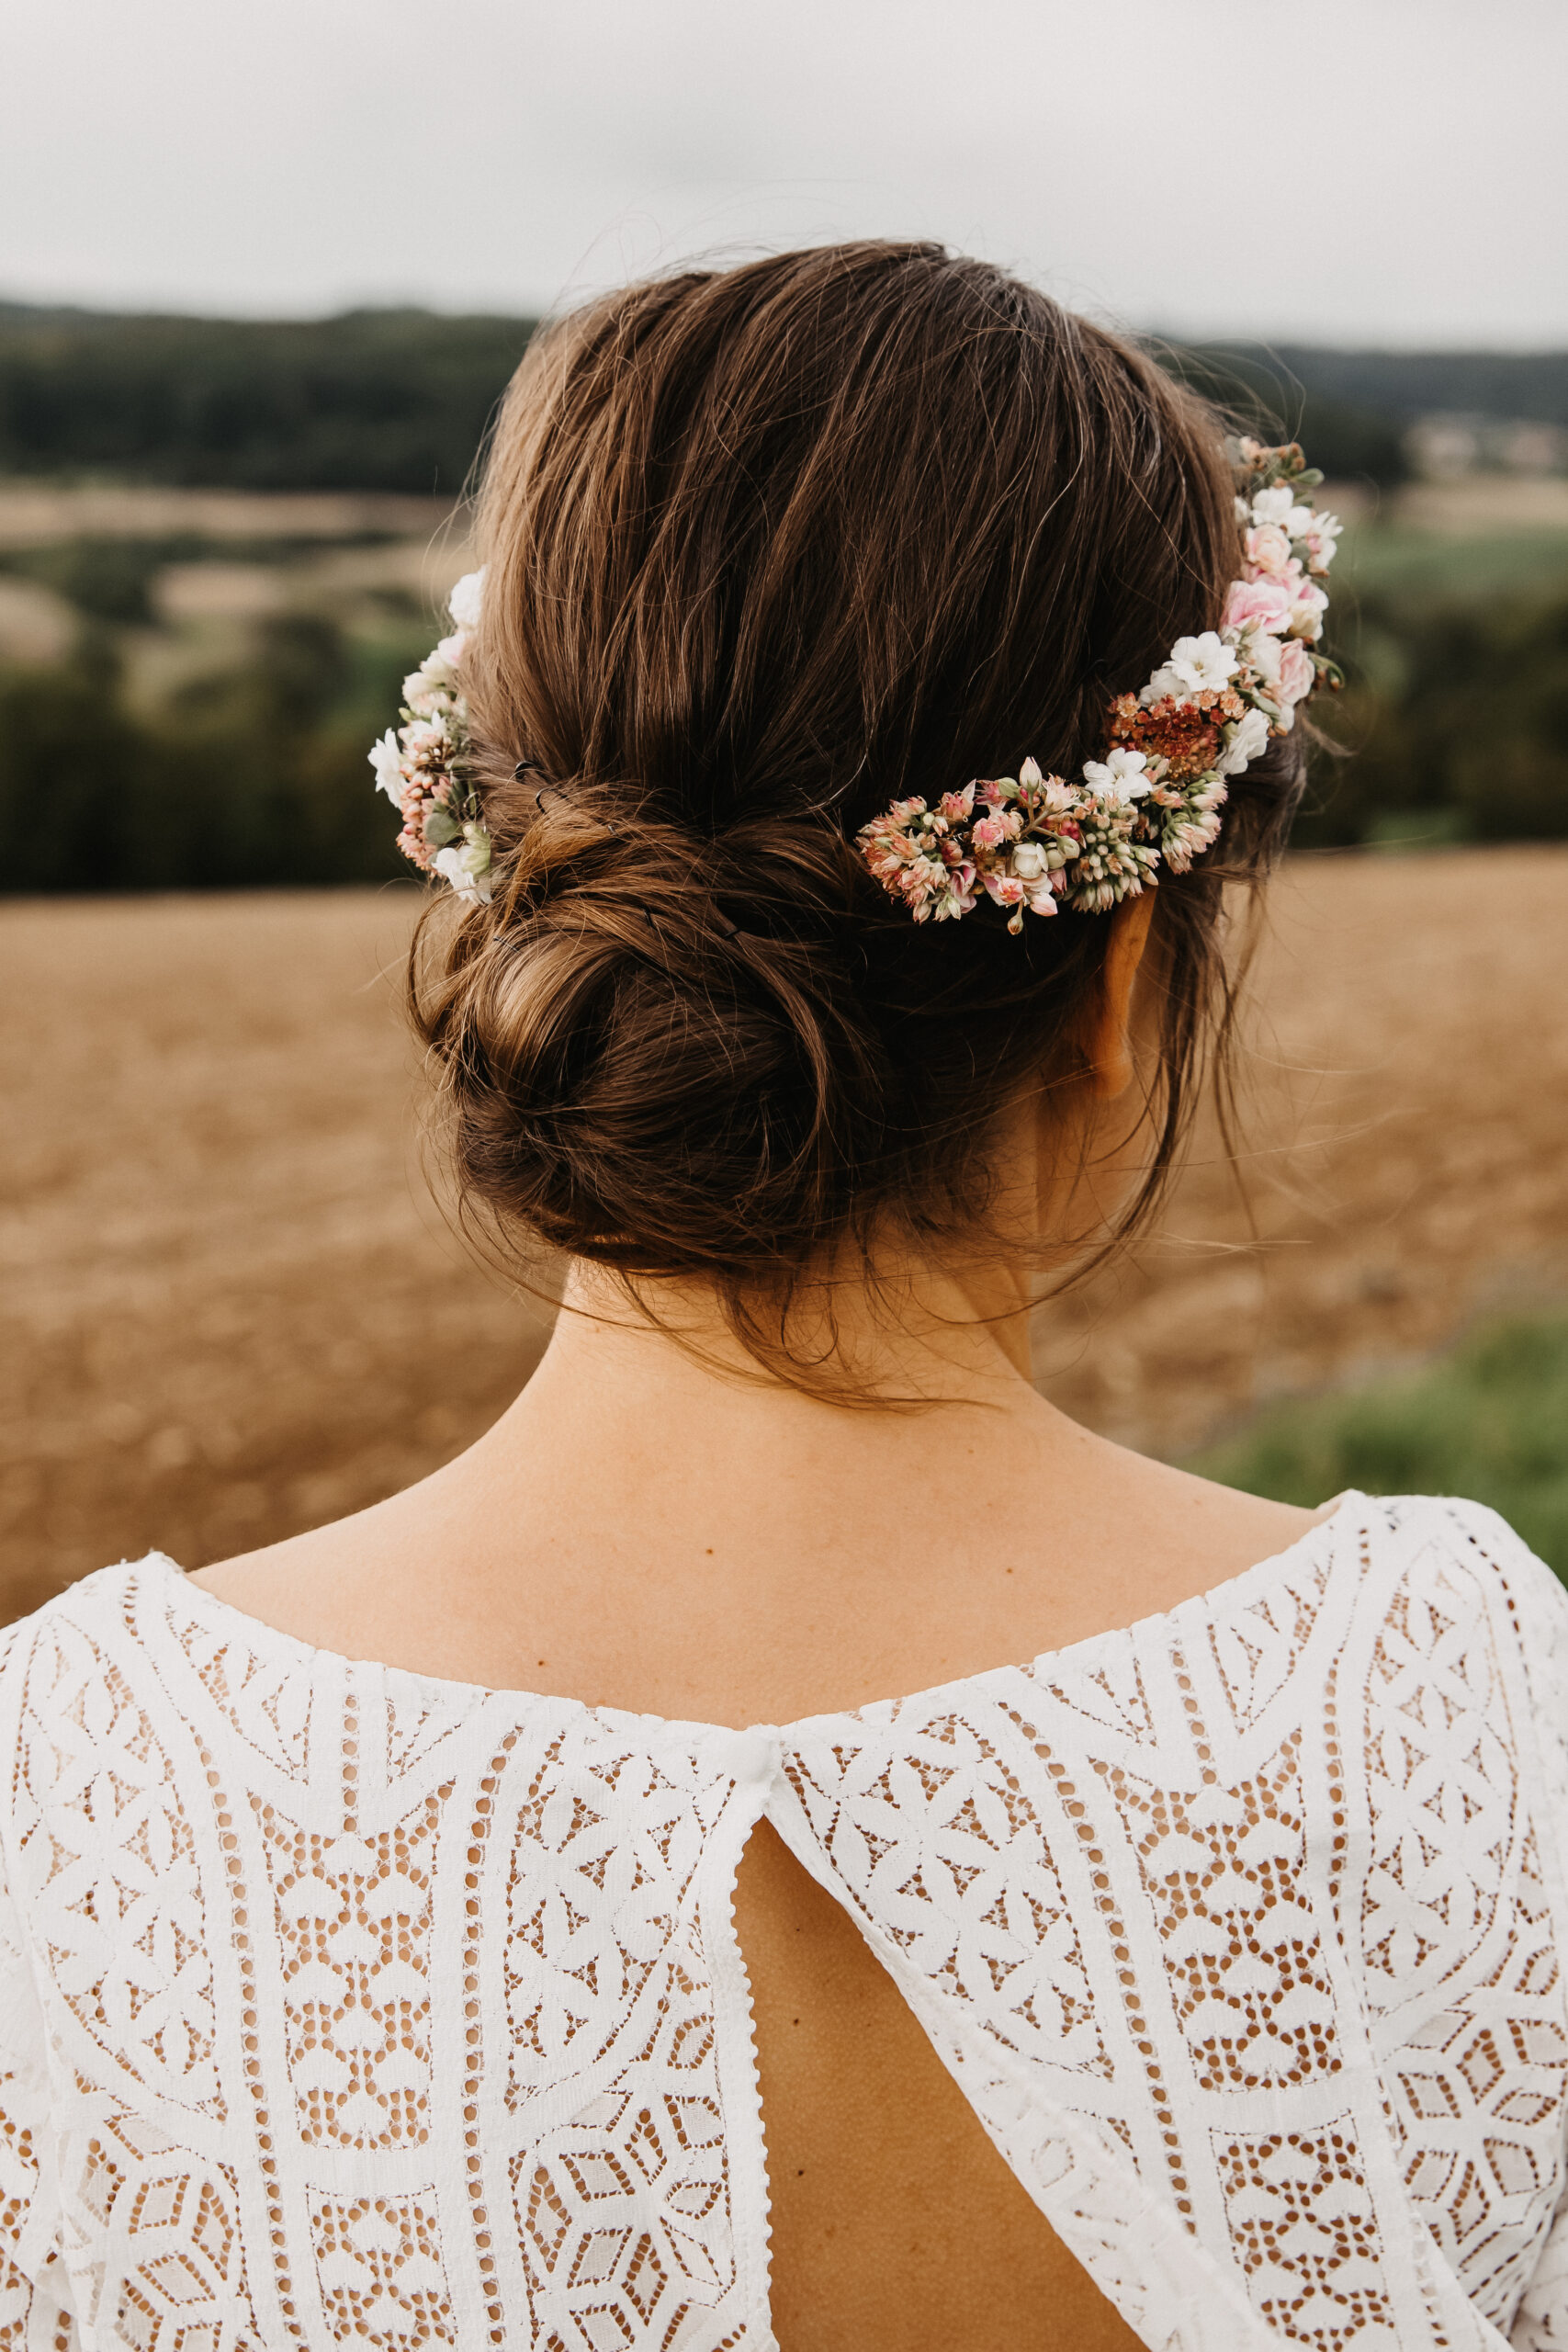 Braut von hinten mit Ihrer wunderschönen Brautfrisur bzw. Haarfrisur für Ihre Hochzeit und sie hat sich noch einen Blumenkranz für ihre Haare knüpfen lassen, sodass sie einen Blumenhaarkranz trägt in weiß und rosé.